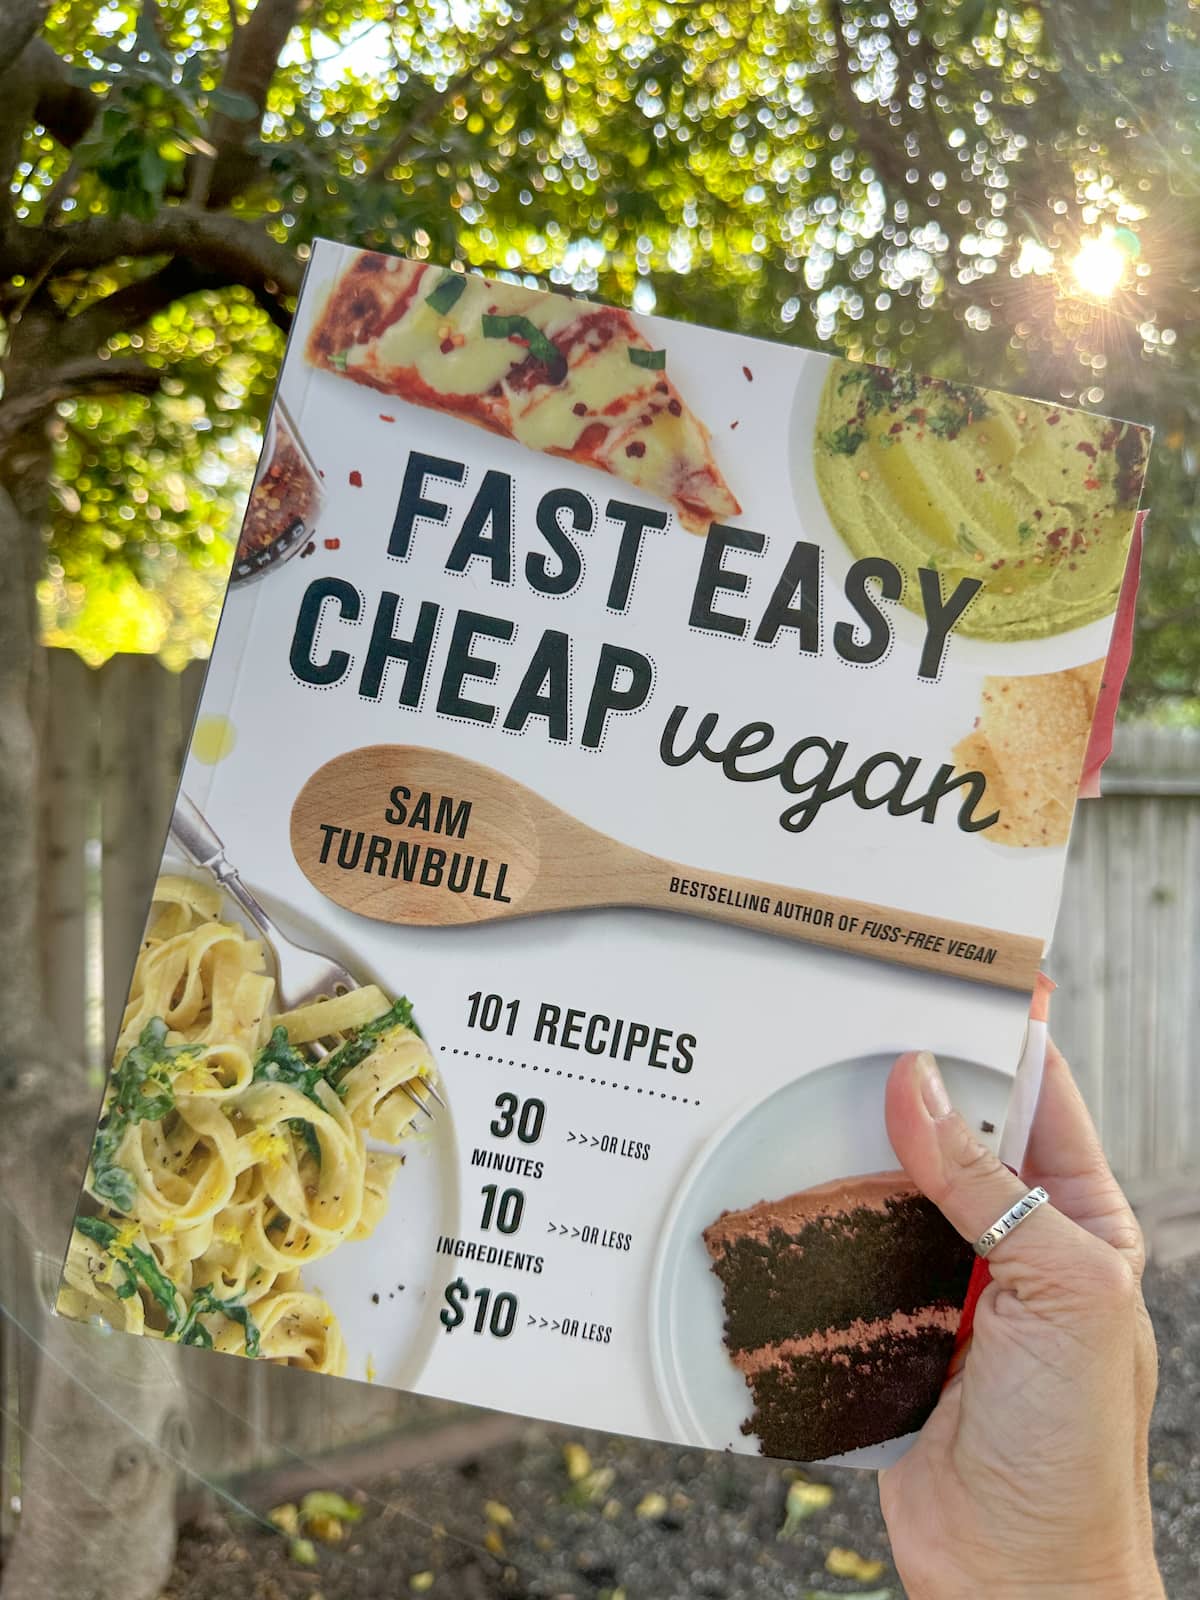 Cover art for Fast Easy Cheap Vegan by Sam Turnbull.